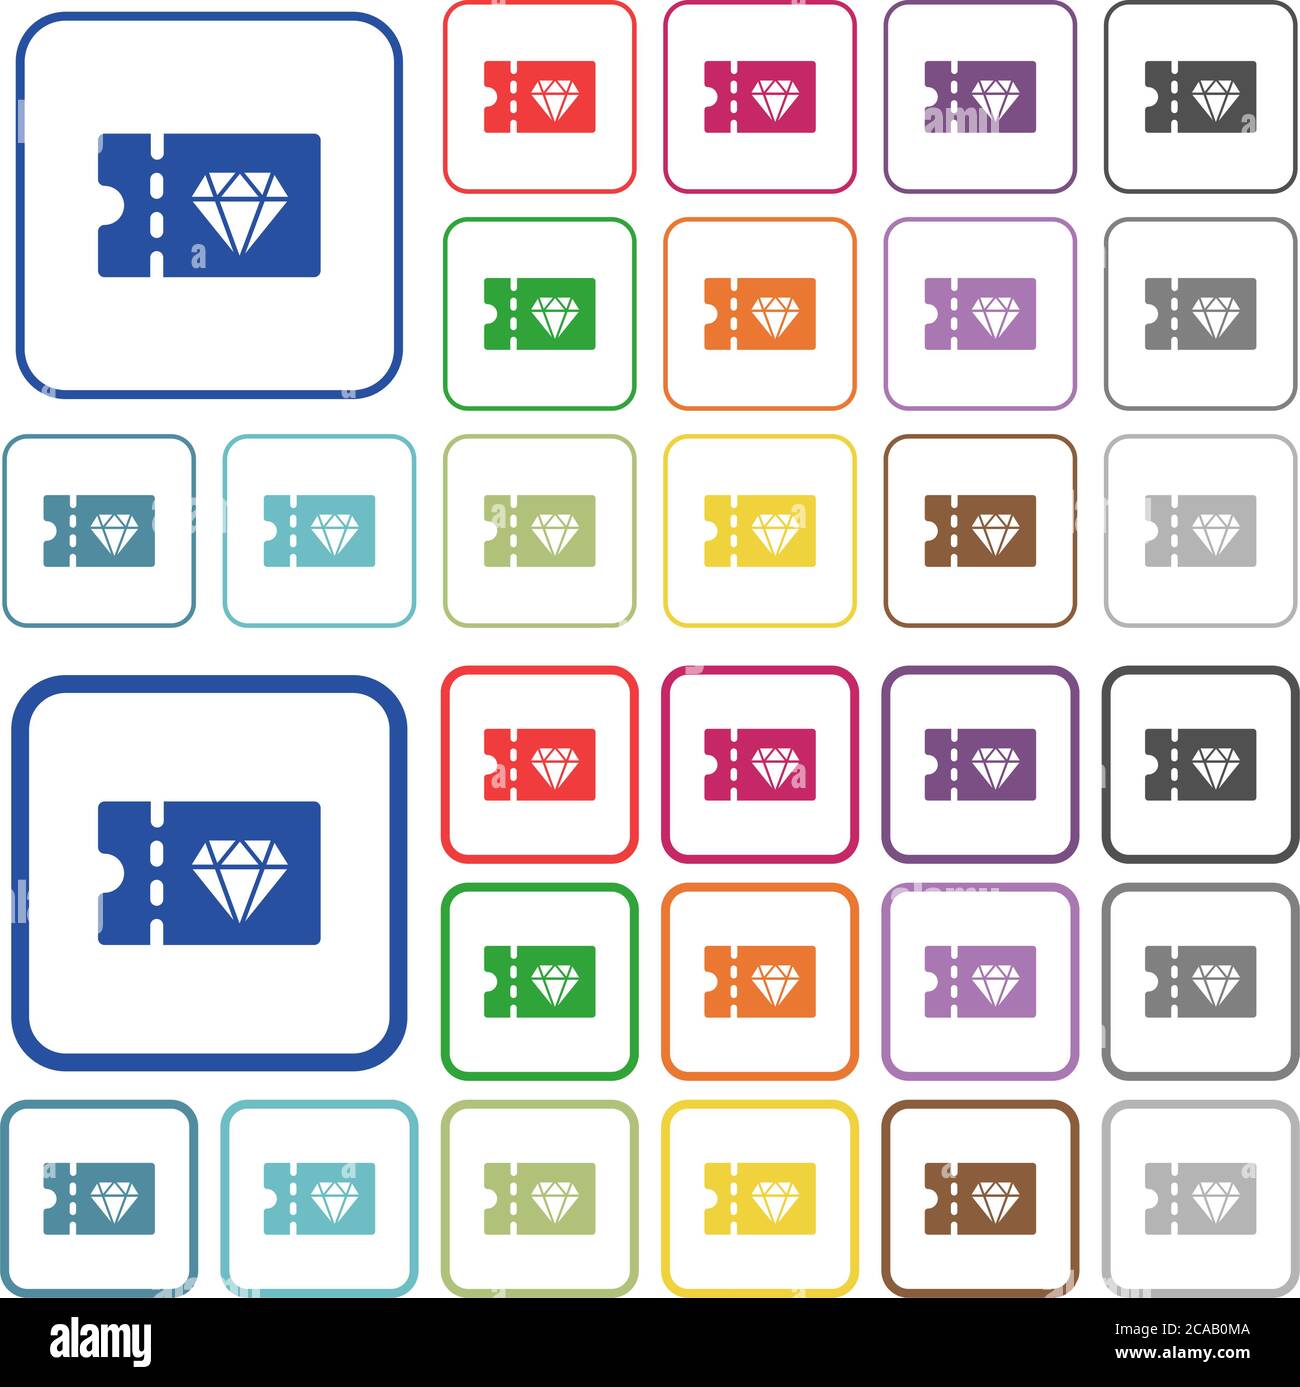 Gioielleria sconto coupon colore icone piatte in cornici quadrate arrotondate. Versioni sottili e spesse incluse. Illustrazione Vettoriale